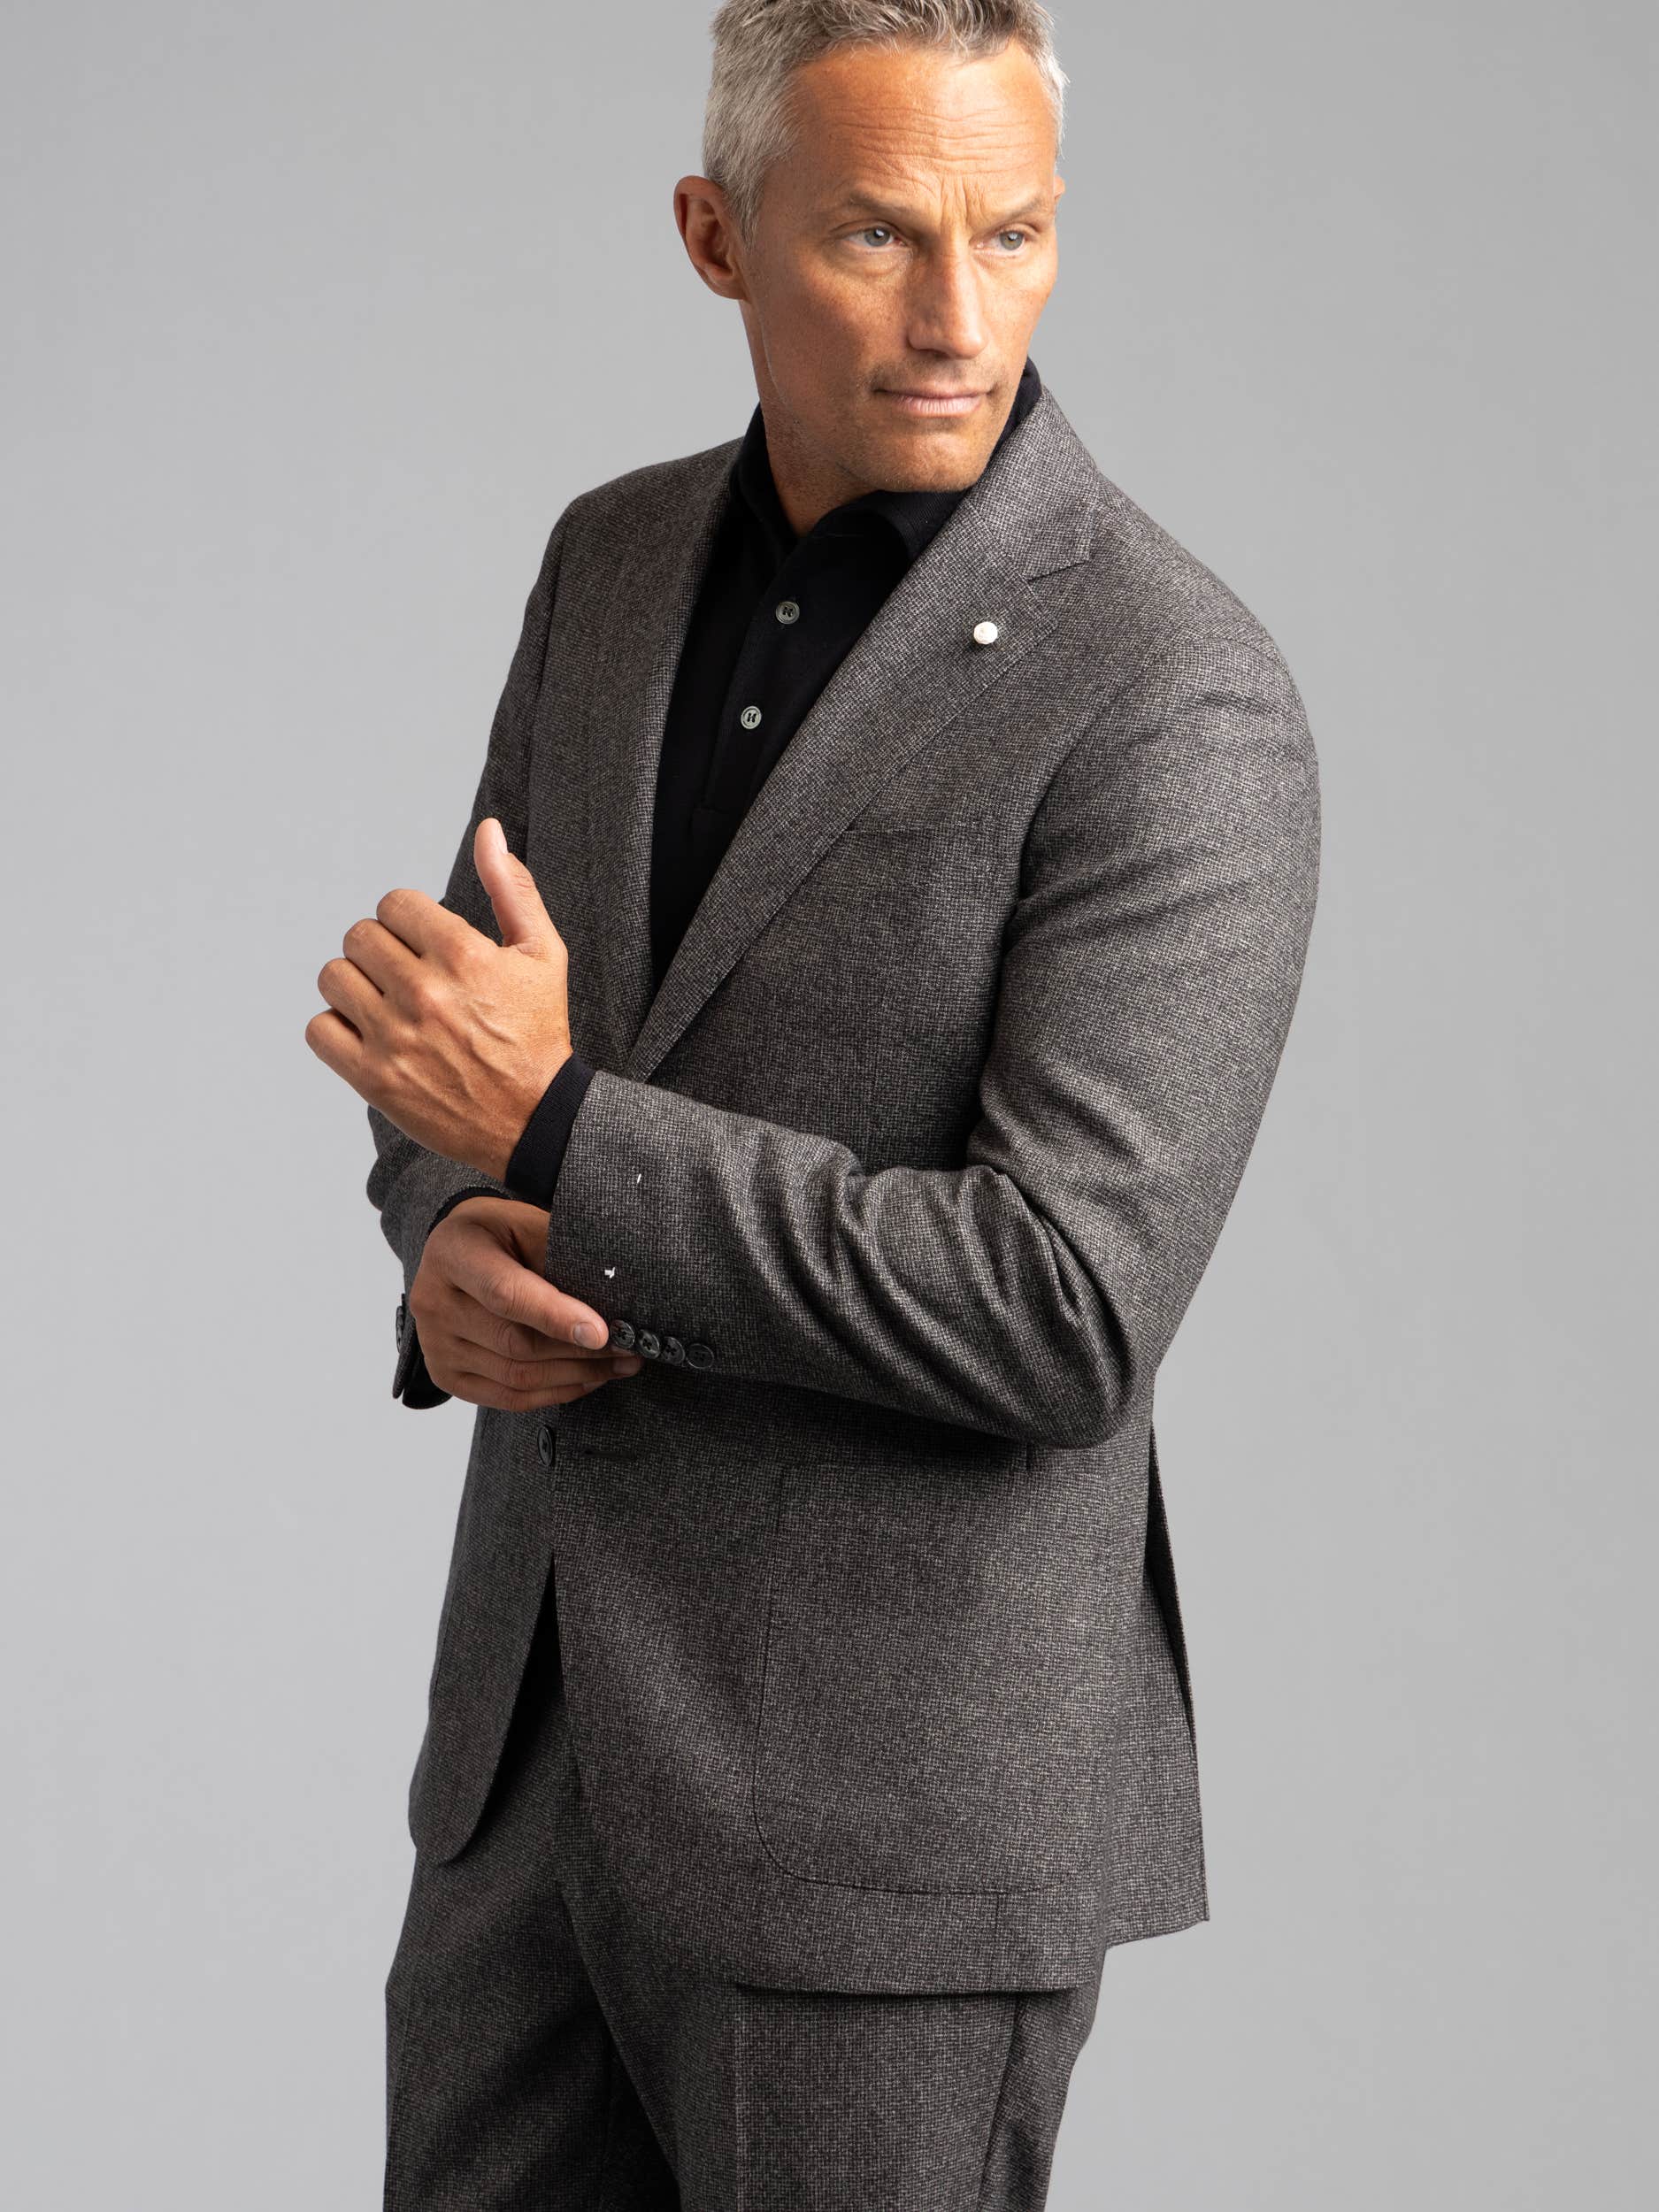 Grey Glen Check Wool Suit